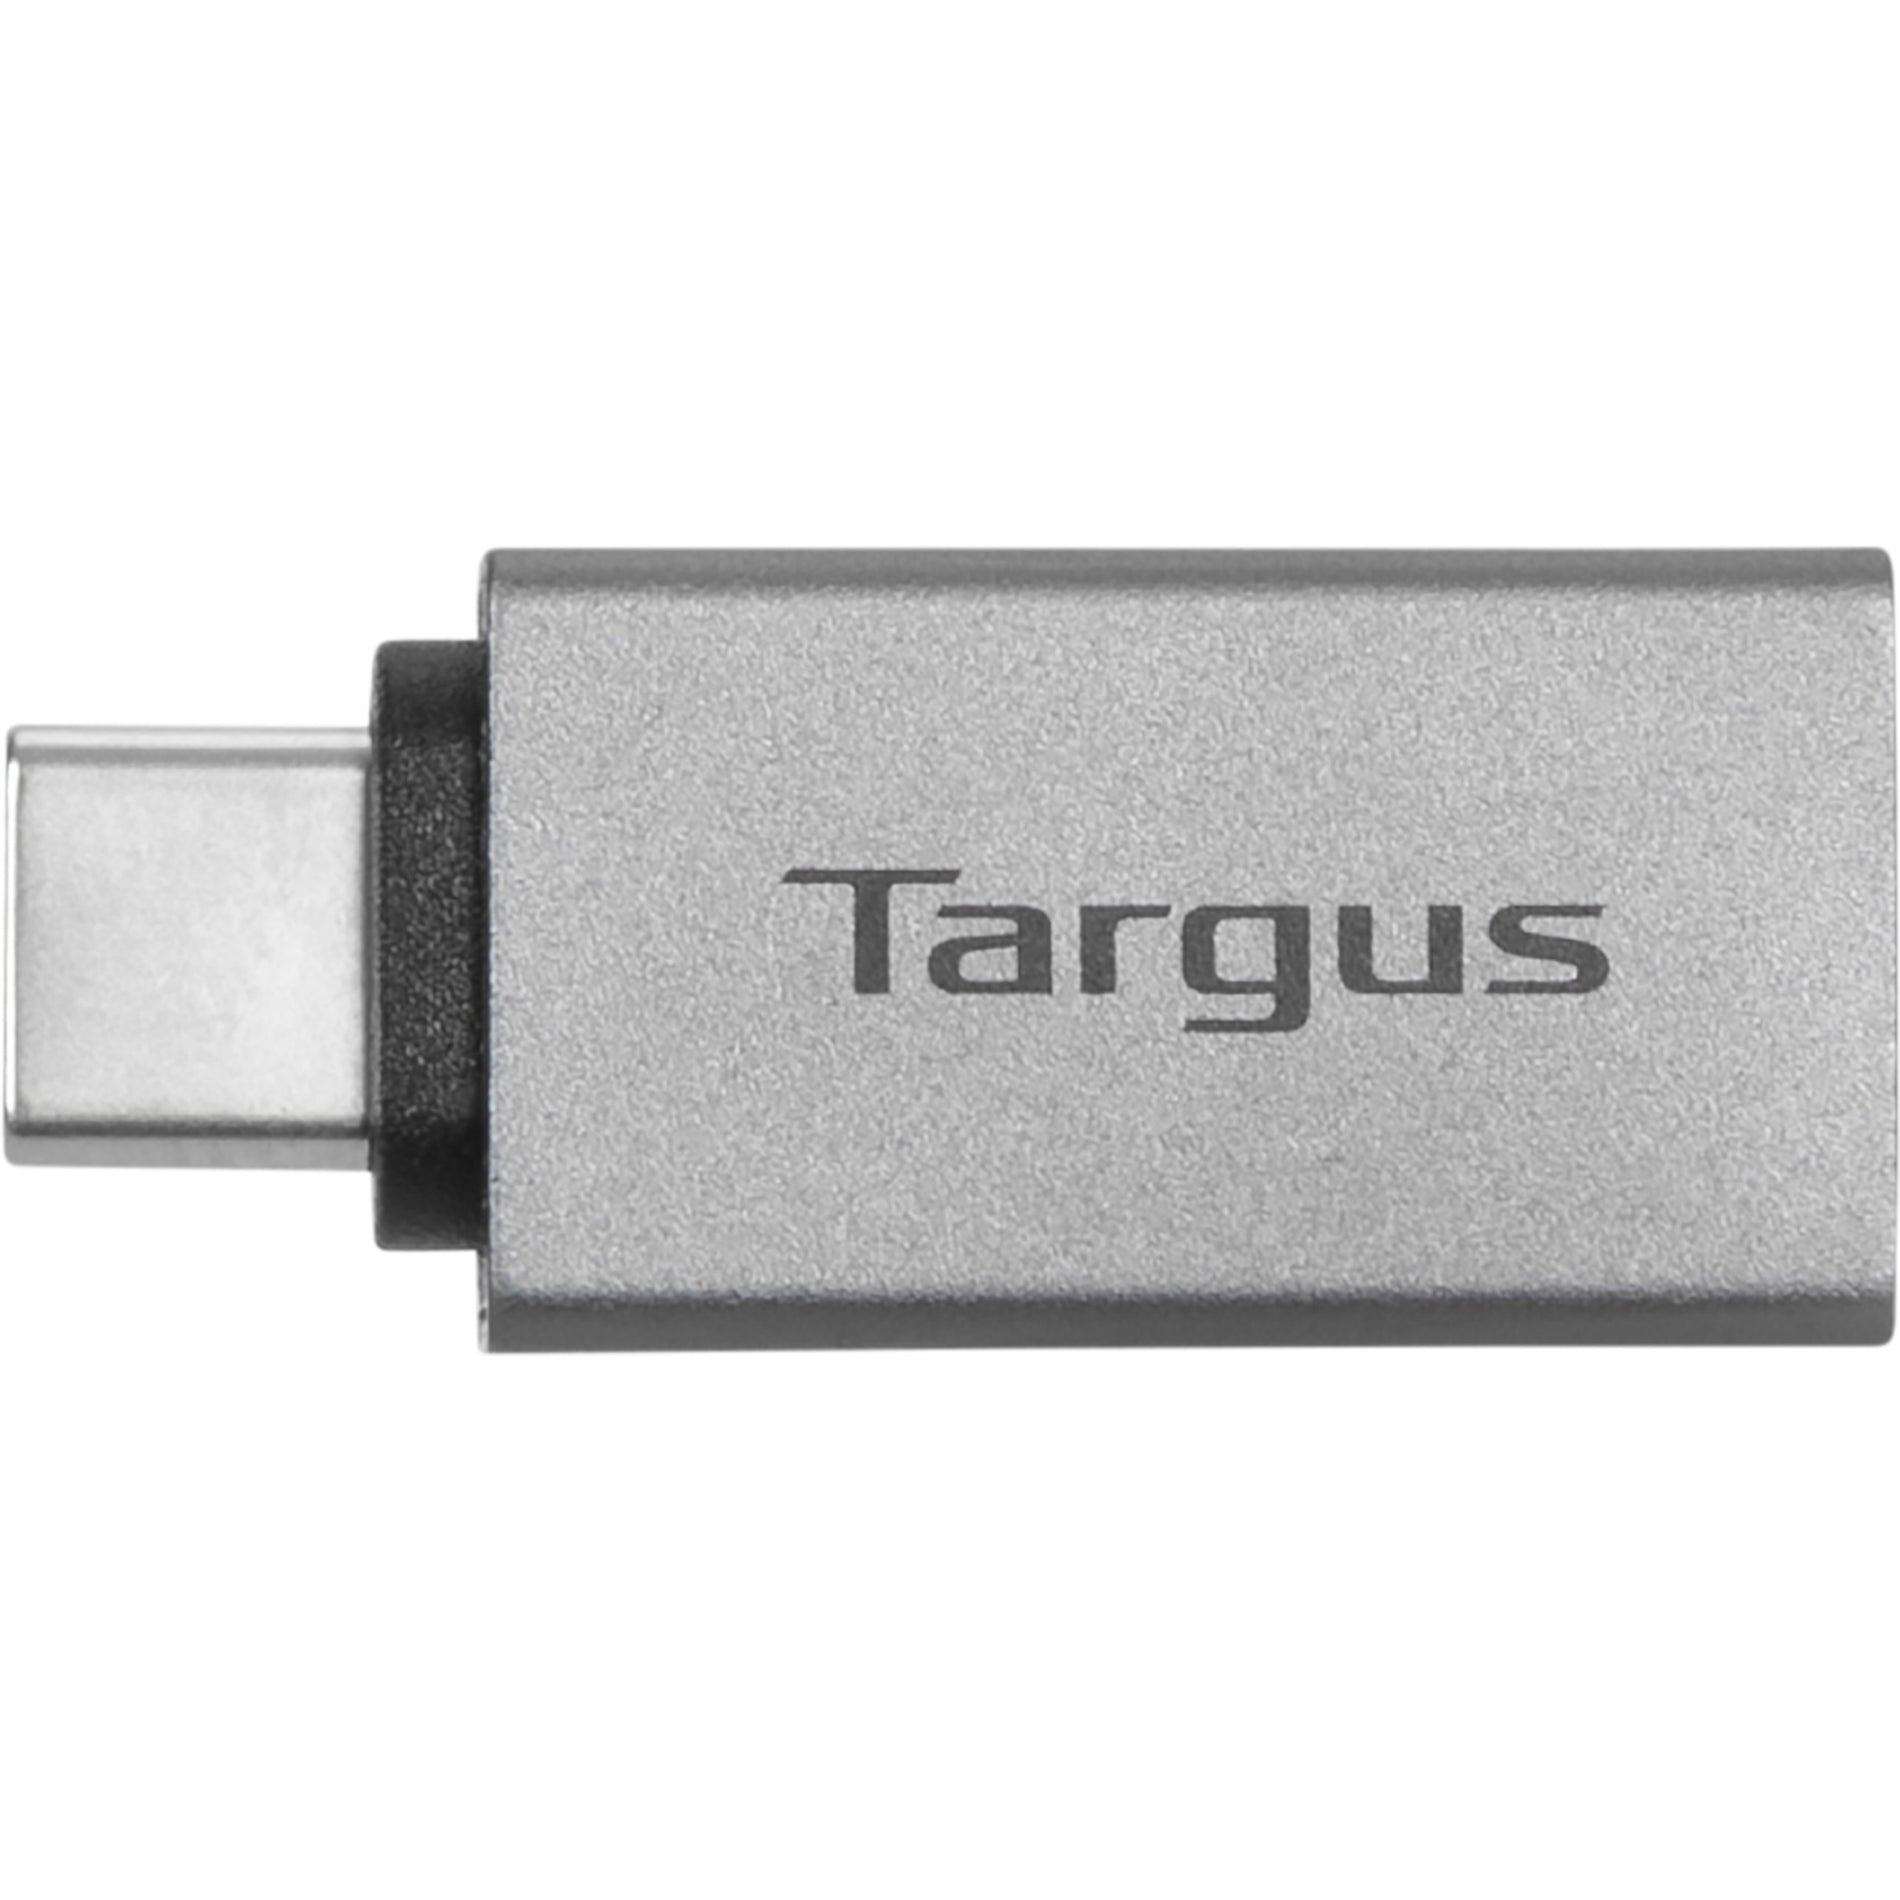 Targus ACA979GL Adattatore di Trasferimento Dati USB/USB-C - Grigio Confezione da 2